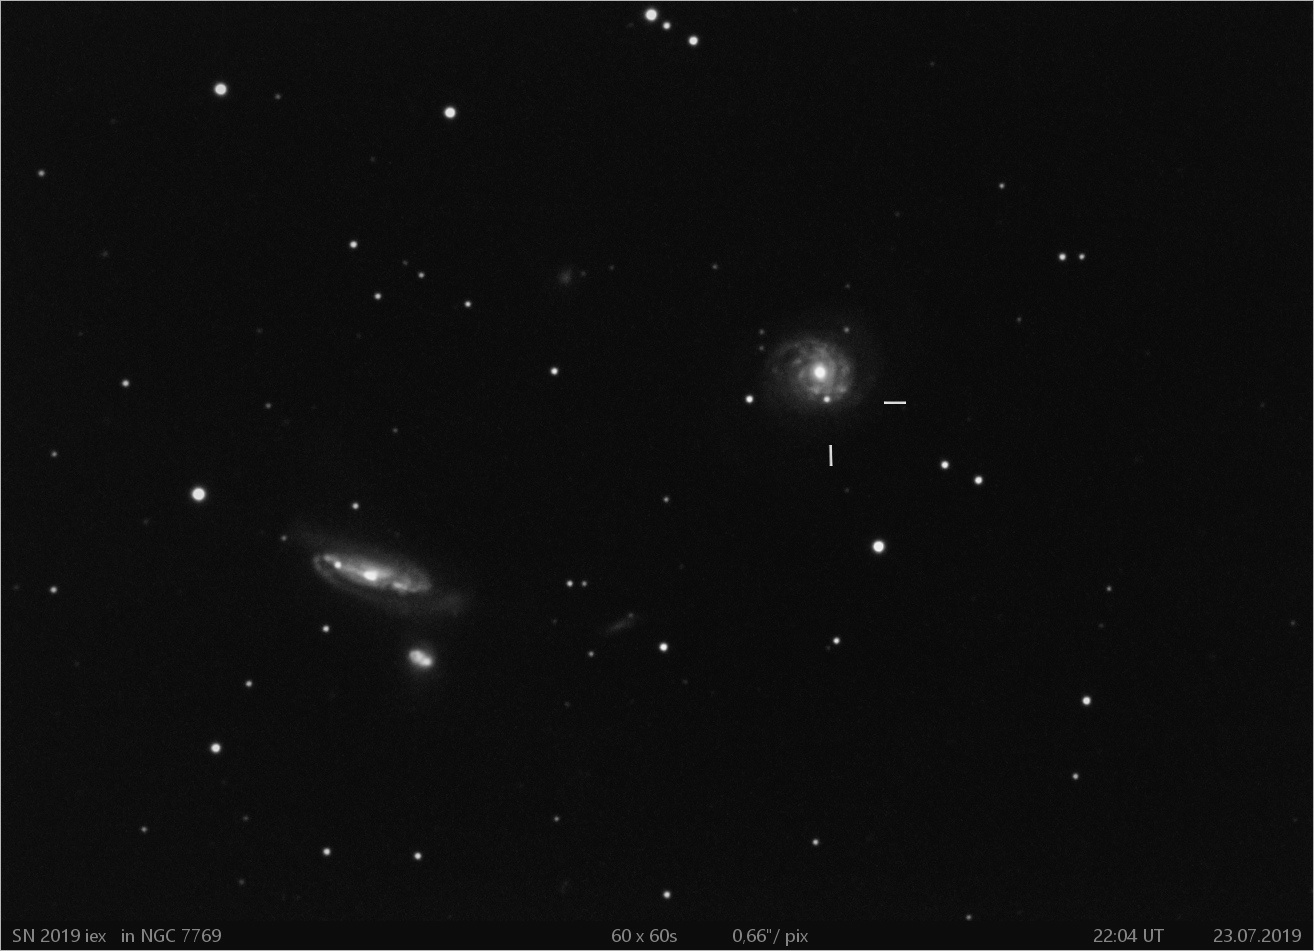 SN 2019iex  in NGC7769